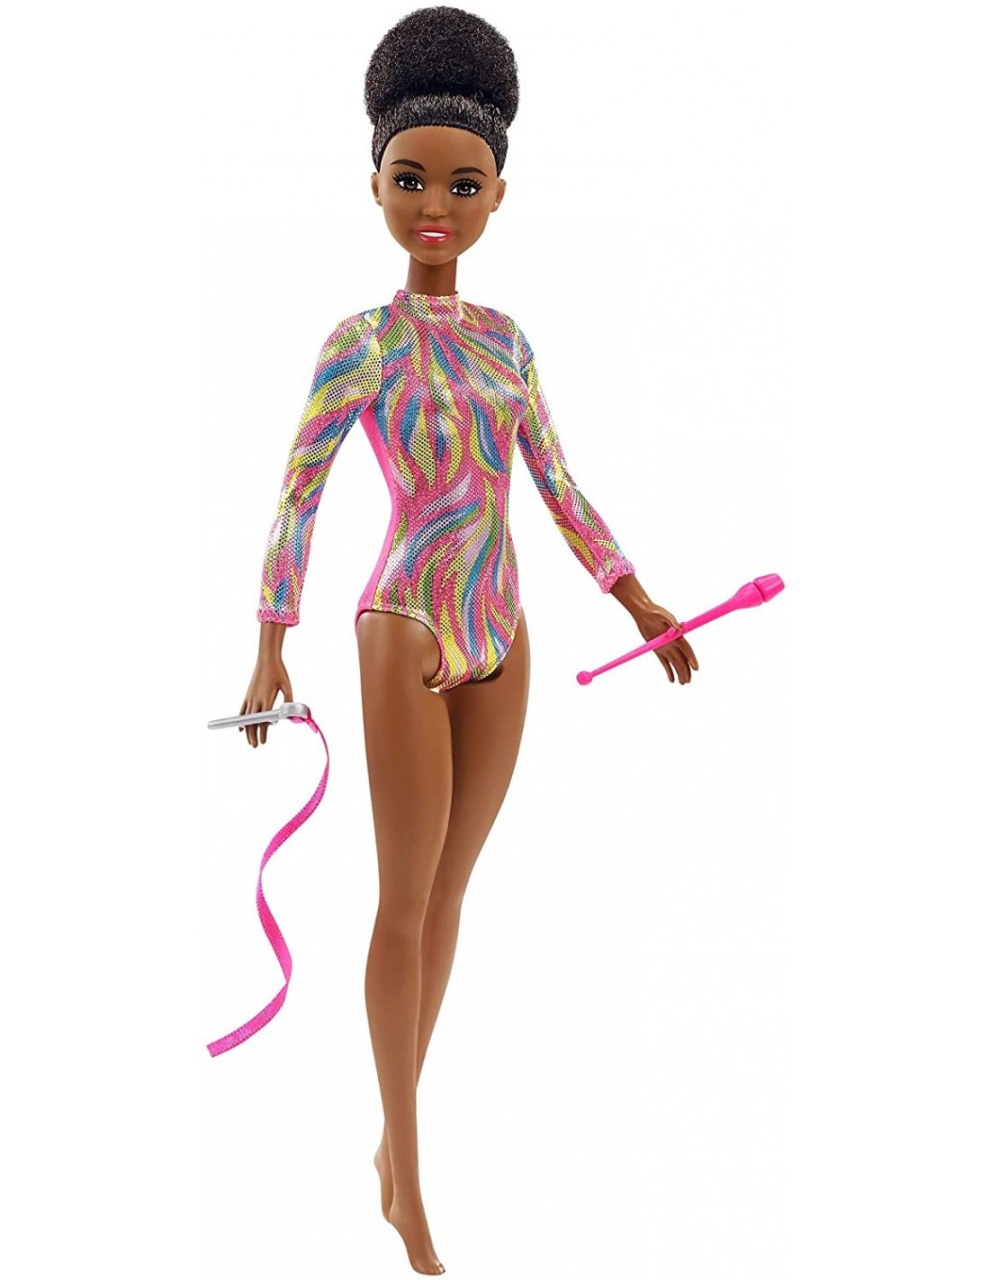 Barbie Turnerin im schimmernden Body